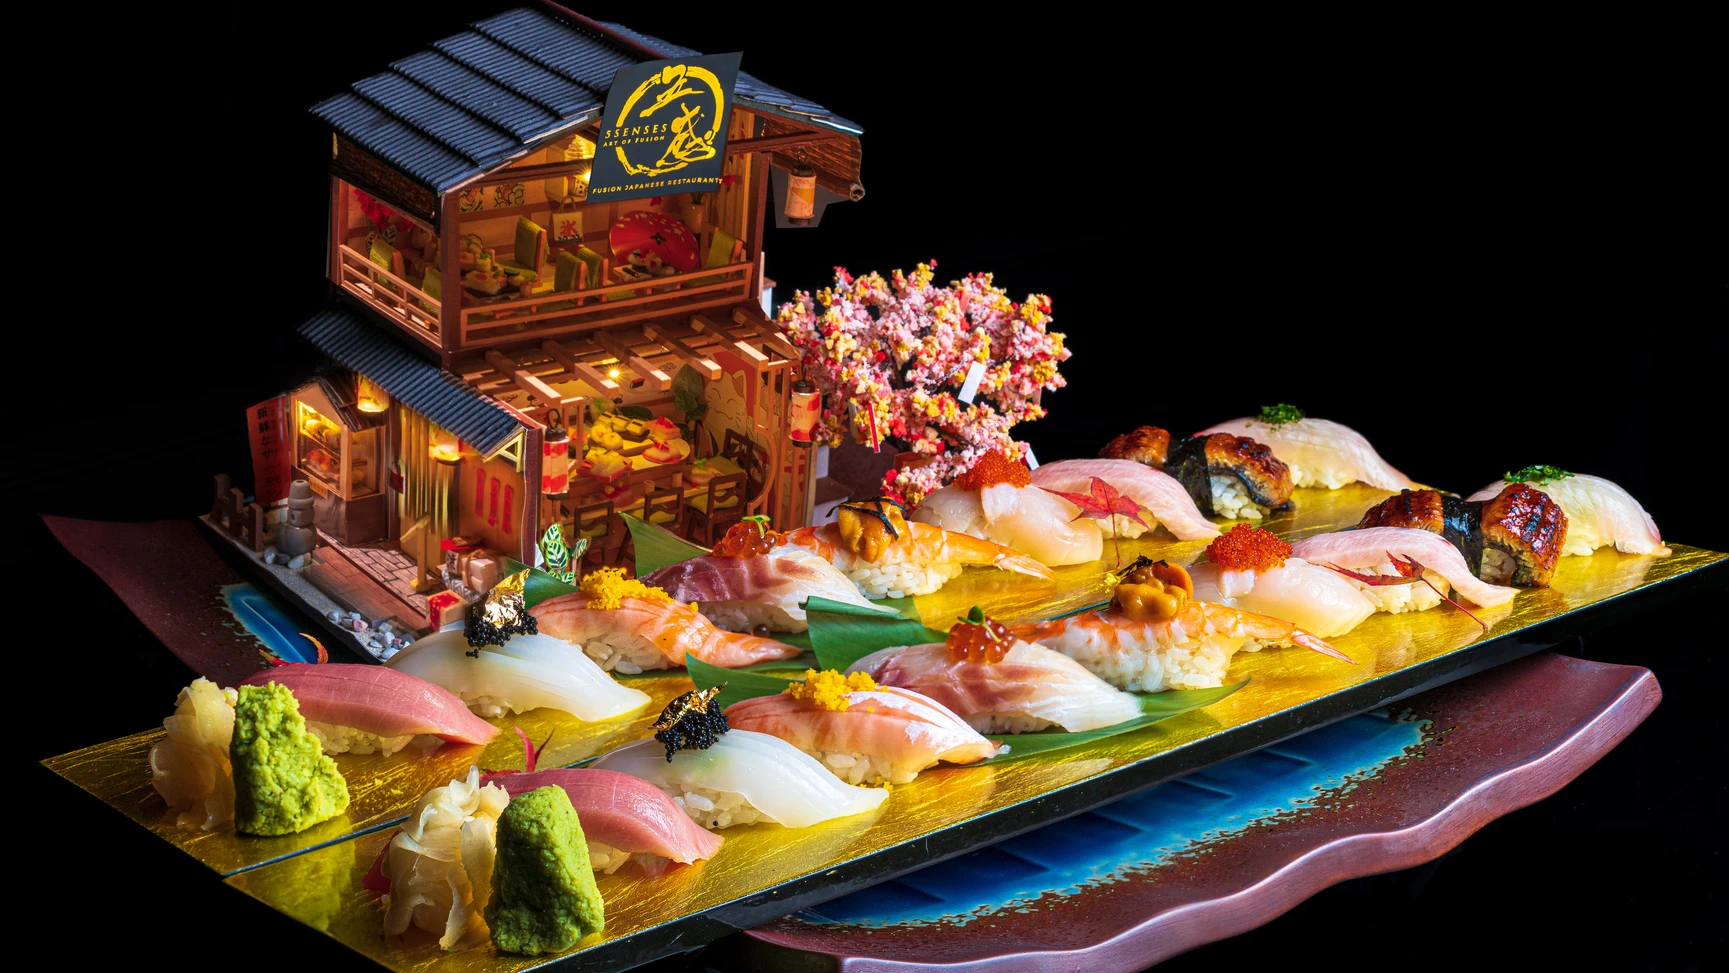 5 Senses Japanese Fusion Restaurant - Khám phá nơi giao thoa giữa ẩm thực và nghệ thuật độc đáo dành riêng cho những quý ông sành điệu.